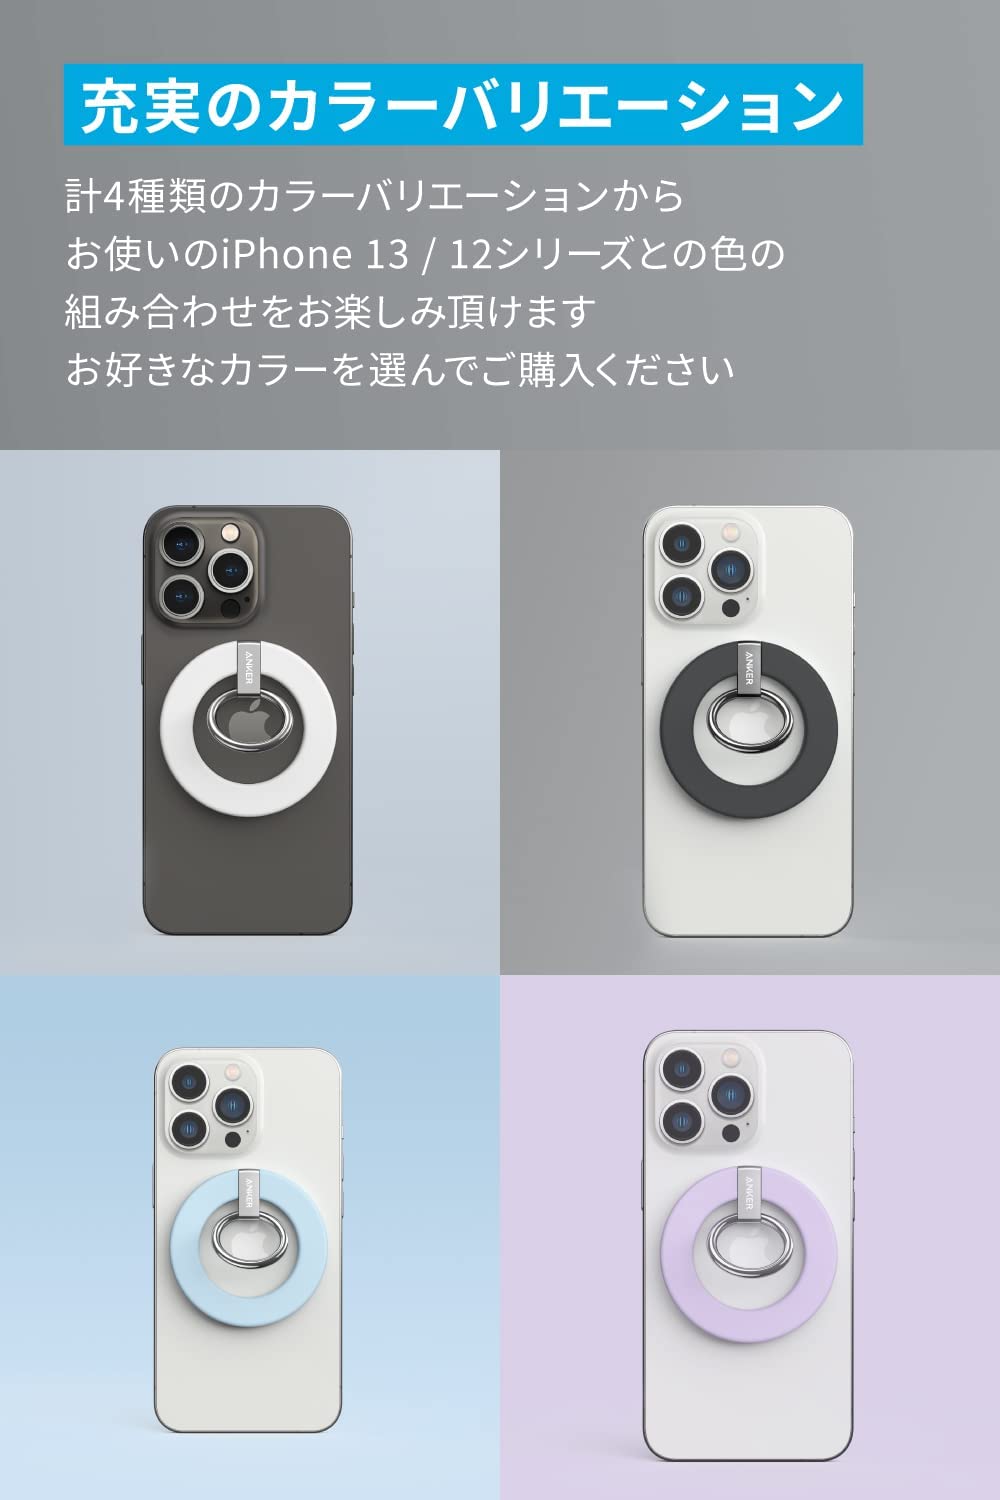 Anker 610 Magnetic Phone Grip (MagGo)( магнит тип смартфон кольцо )[ магнит тип / van машина кольцо / смартфон подставка функция ]iPhone 13 / 12